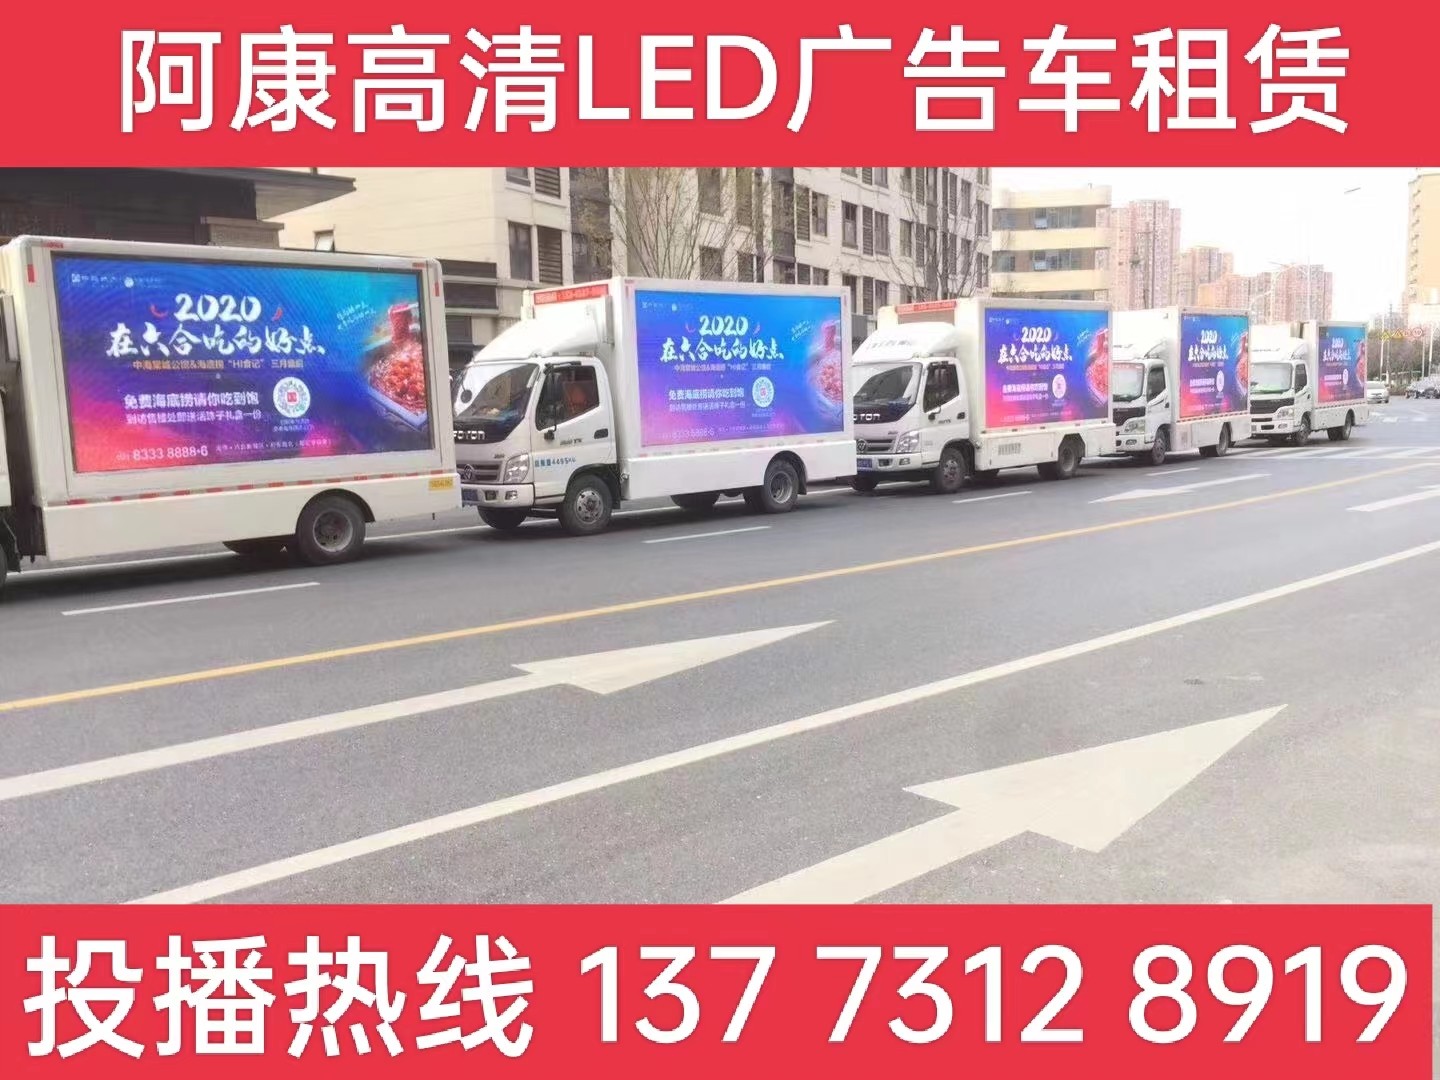 宝应宣传车出租-海底捞LED广告